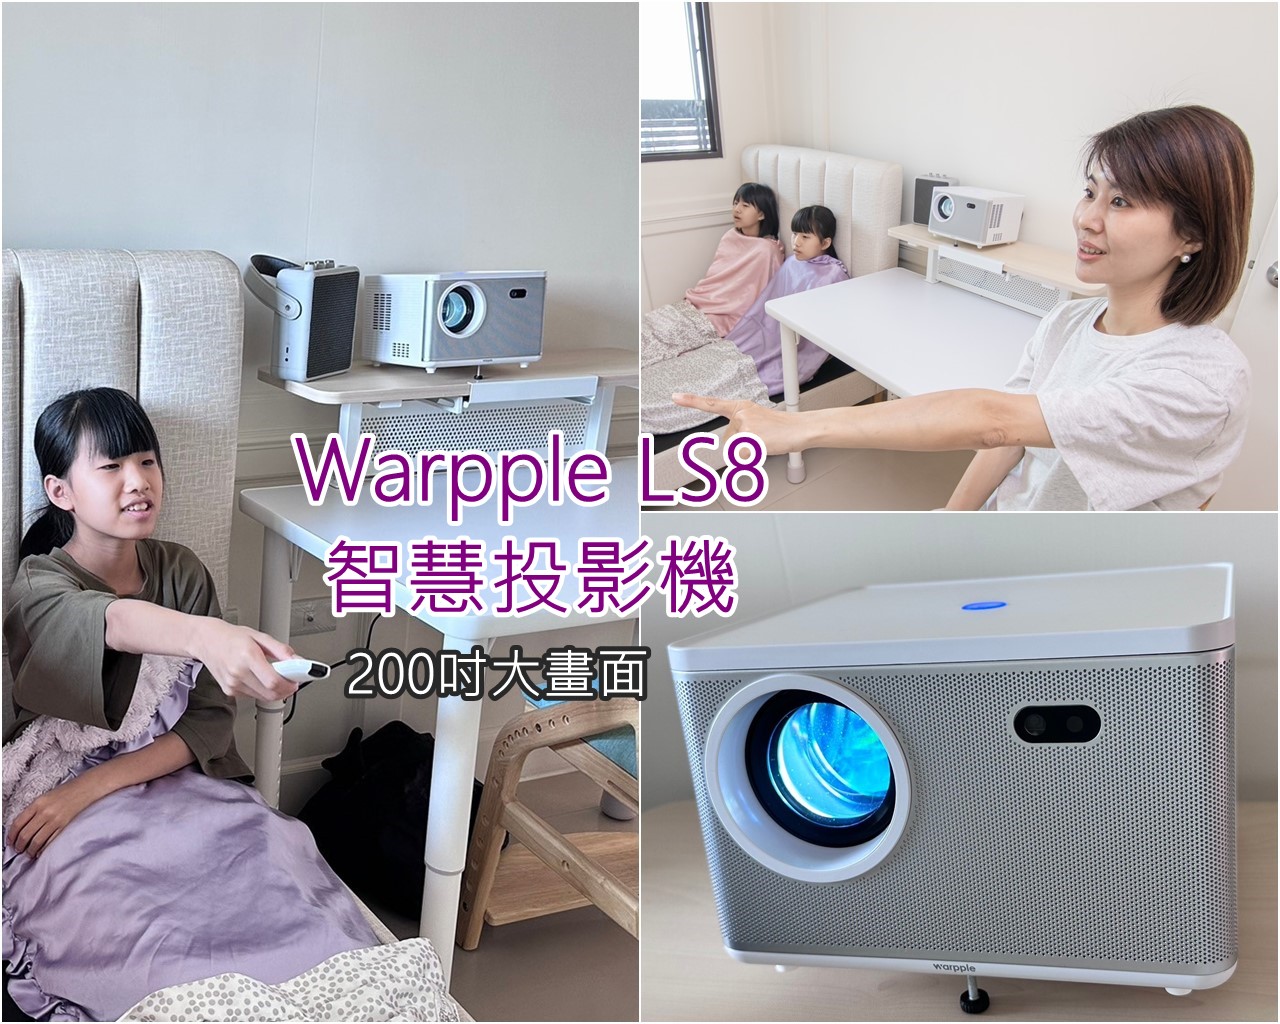 Warpple LS8 智慧投影機開箱｜投影機領導品牌NO.1 百吋大畫面 沉浸感影音體驗